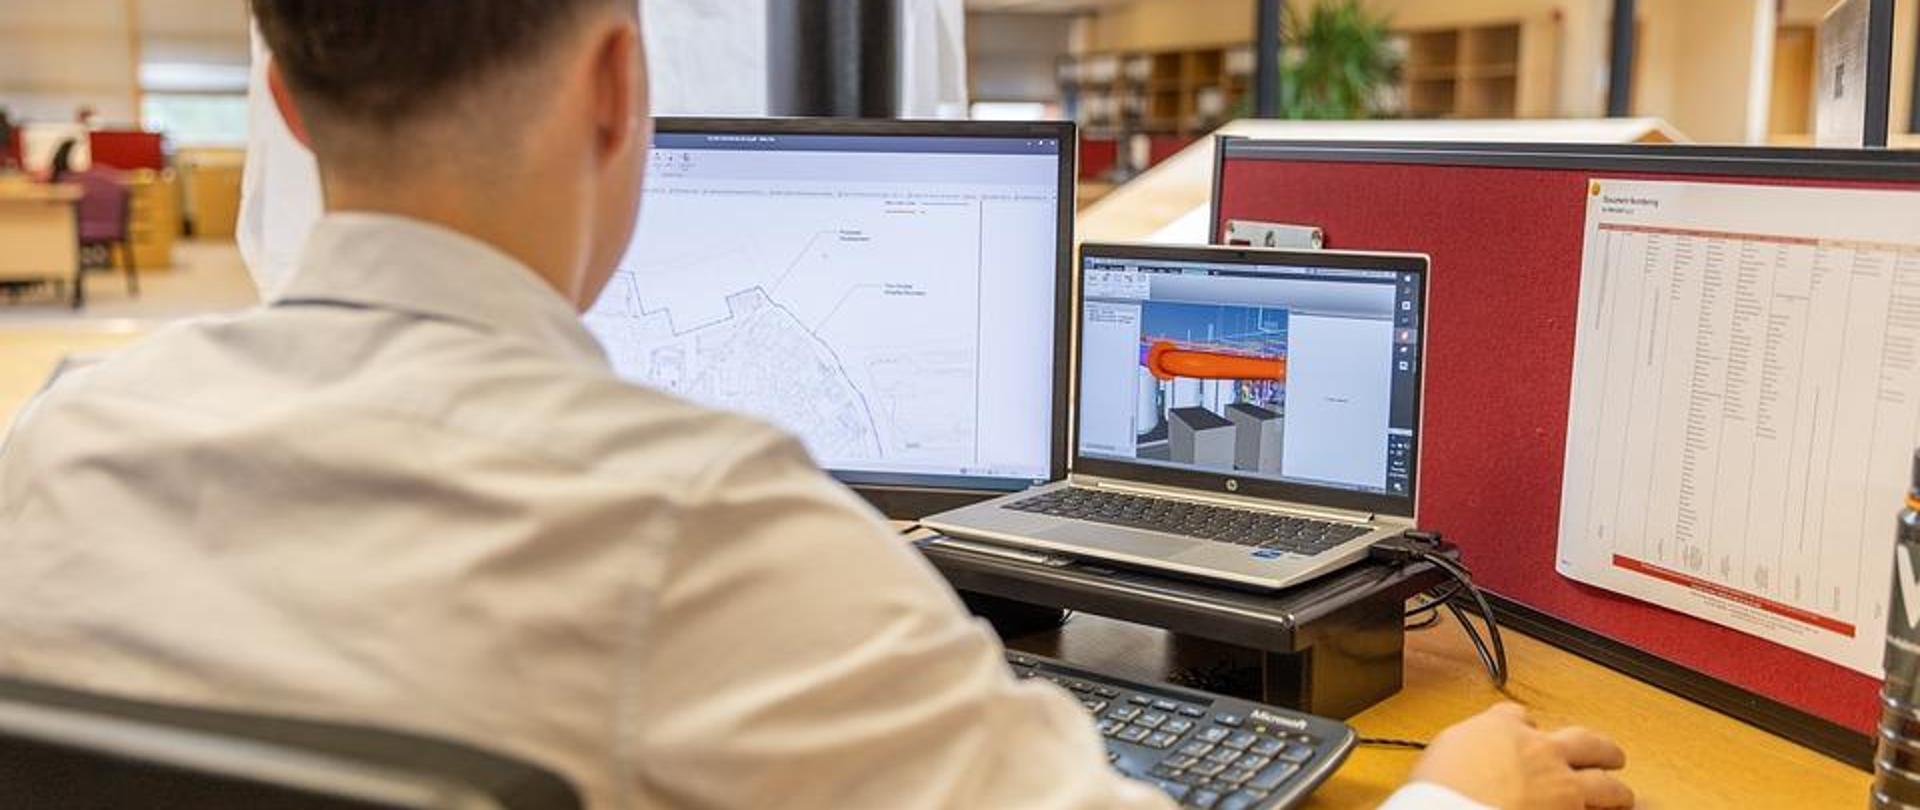 Mężczyzna podczas pracy na stanowisku wyposażonym w laptopa, dwa monitory ekranowe oraz klawiaturę i mysz w pomieszczeniu biurowym